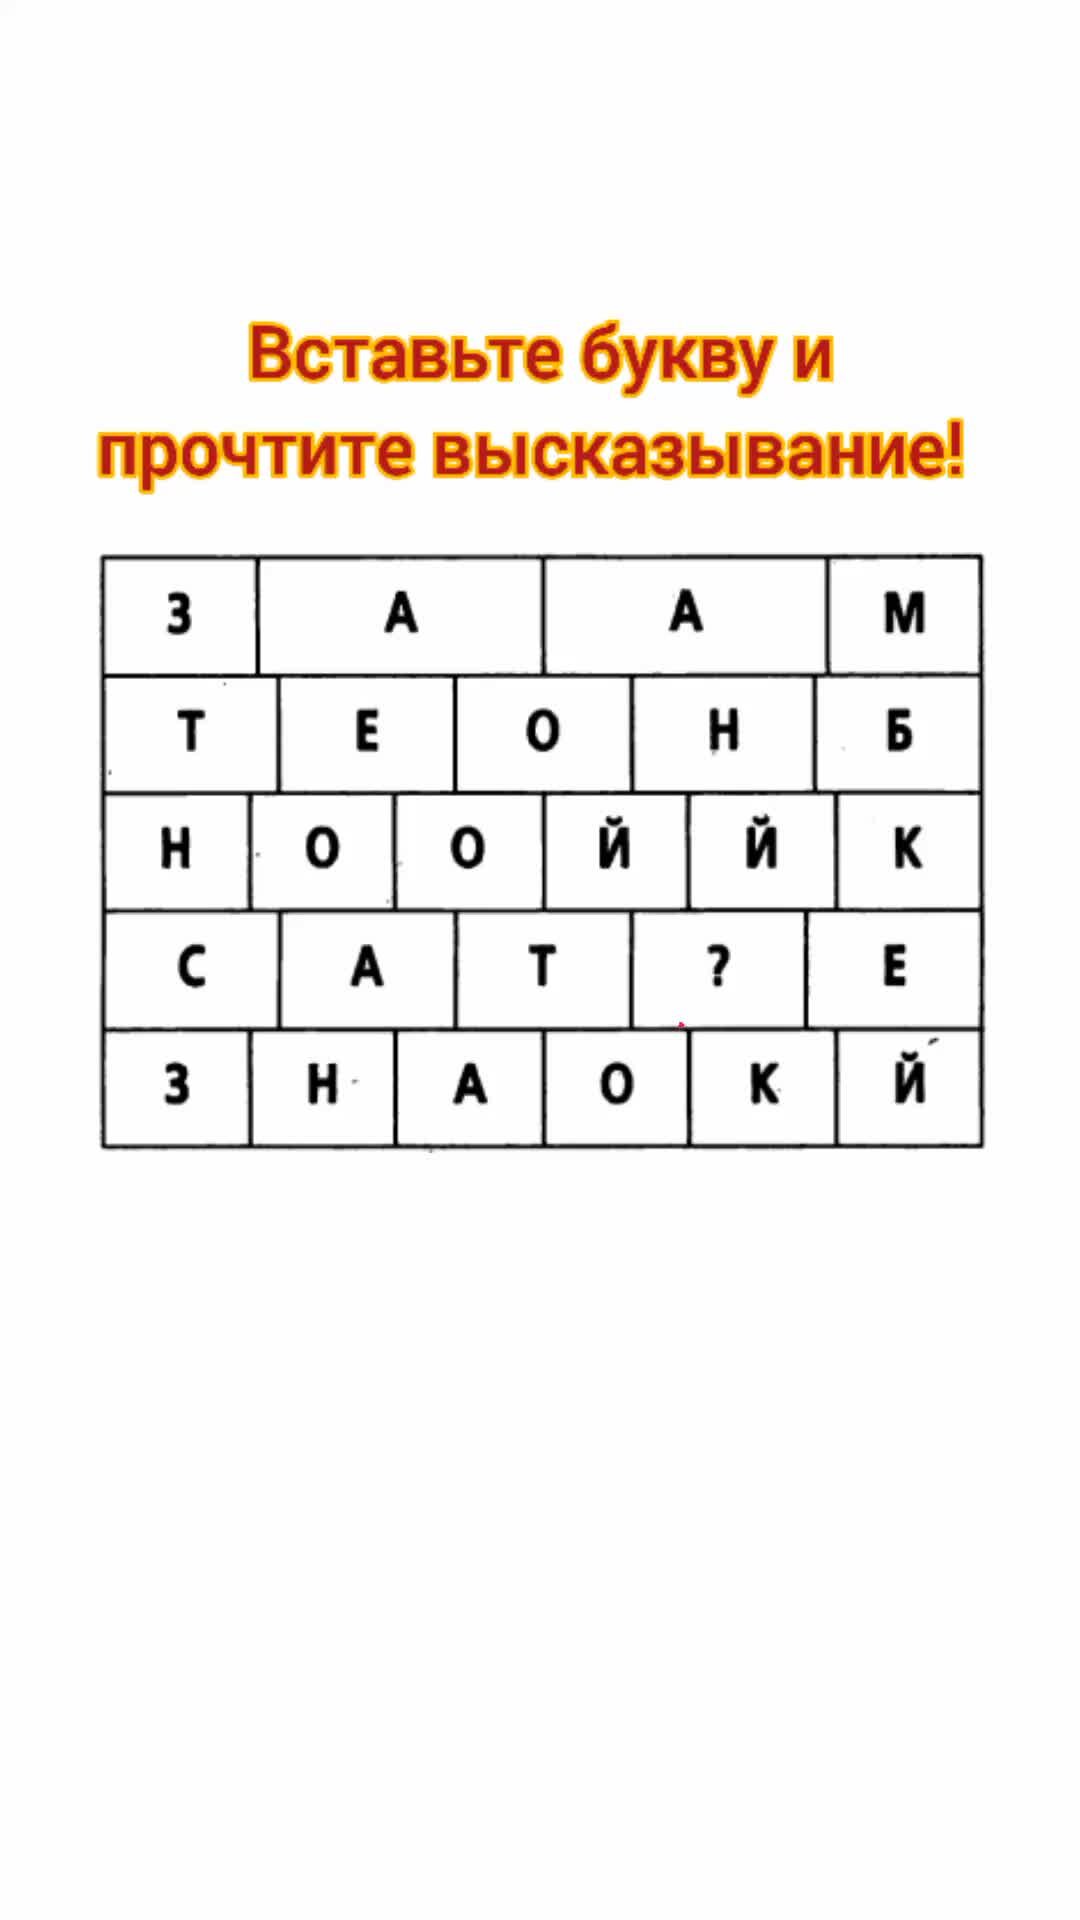 Пословицы и поговорки на букву «А» — Русские пословицы